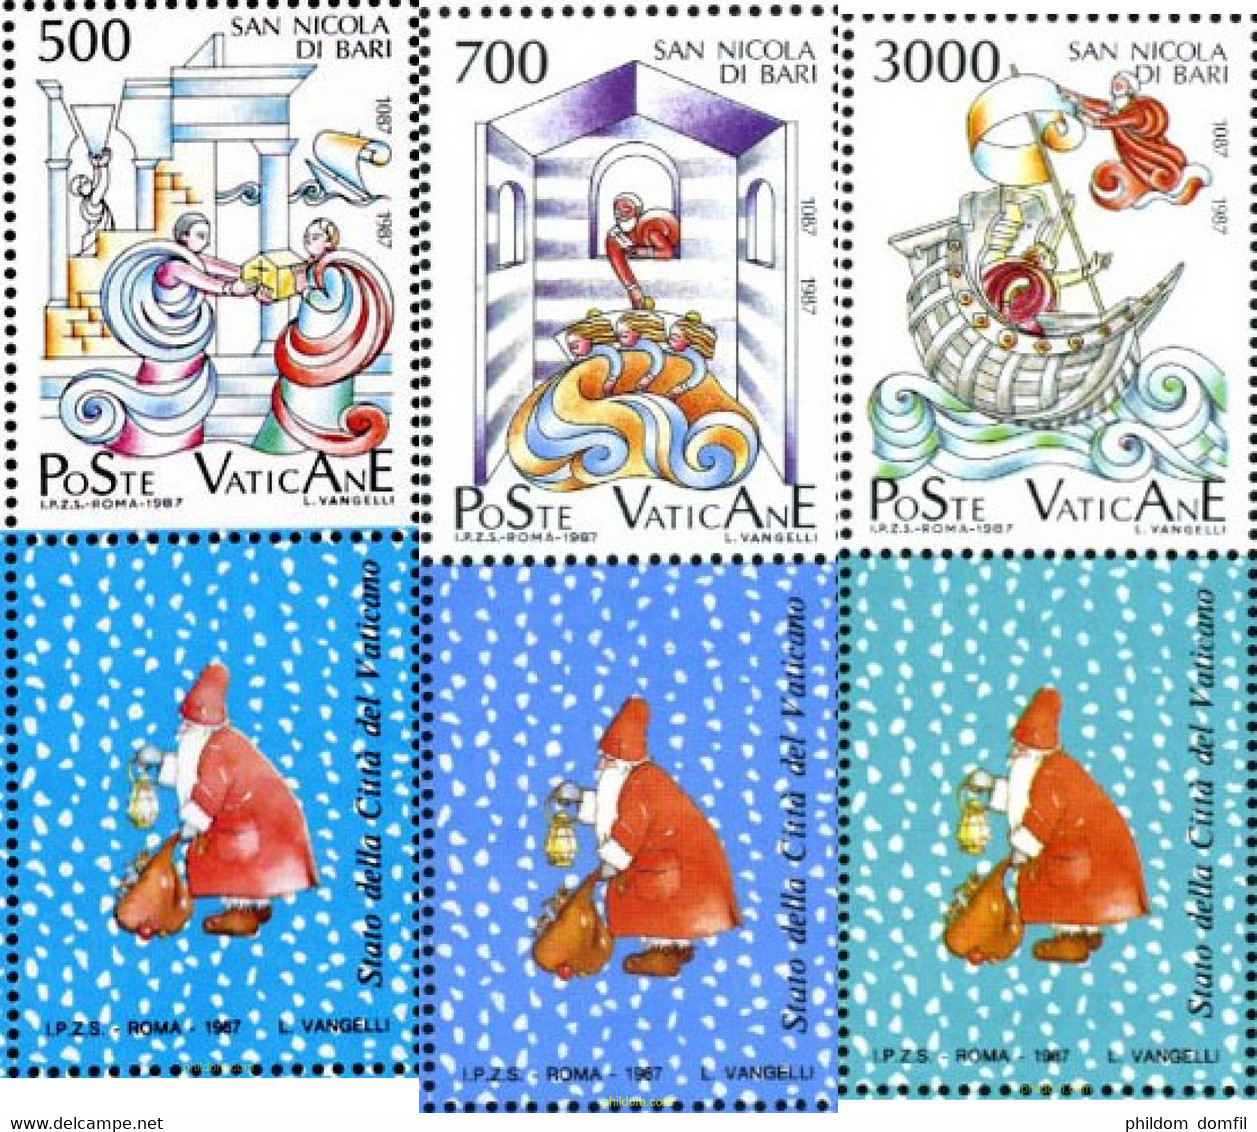 686408 MNH VATICANO 1987 9 CENTENARIO DE LA TRANSFERENCIA DEL RELICARIO DE SAN NICOLAS DE MYRE A BARI - Used Stamps